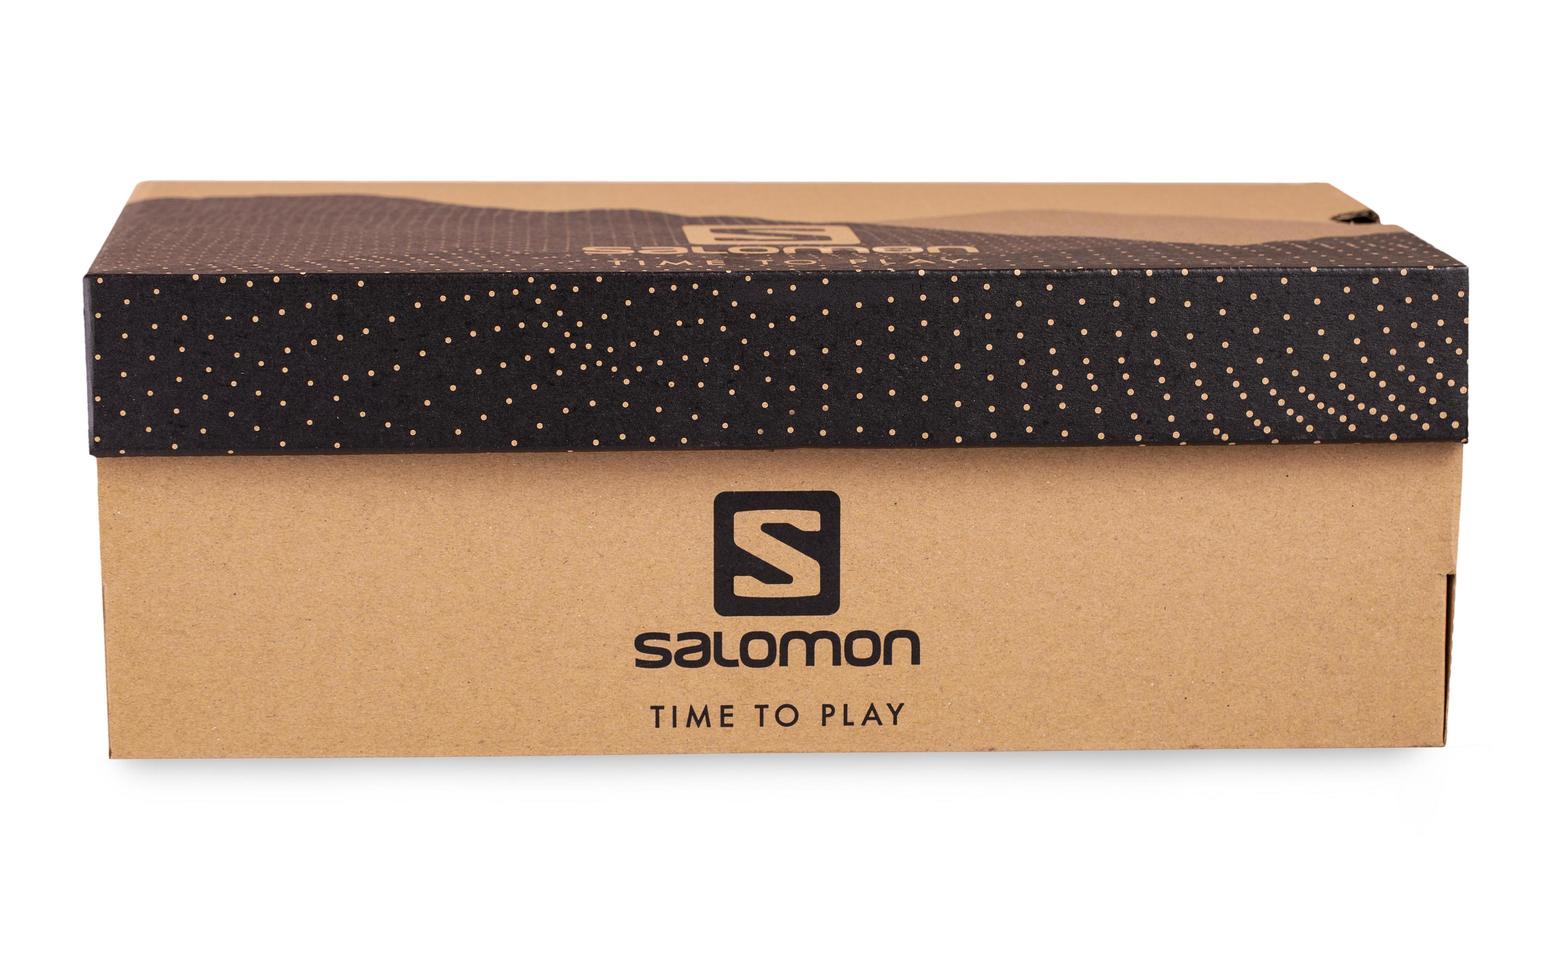 Salomon Sign On Salomon Shoe Box isolated on white background photo